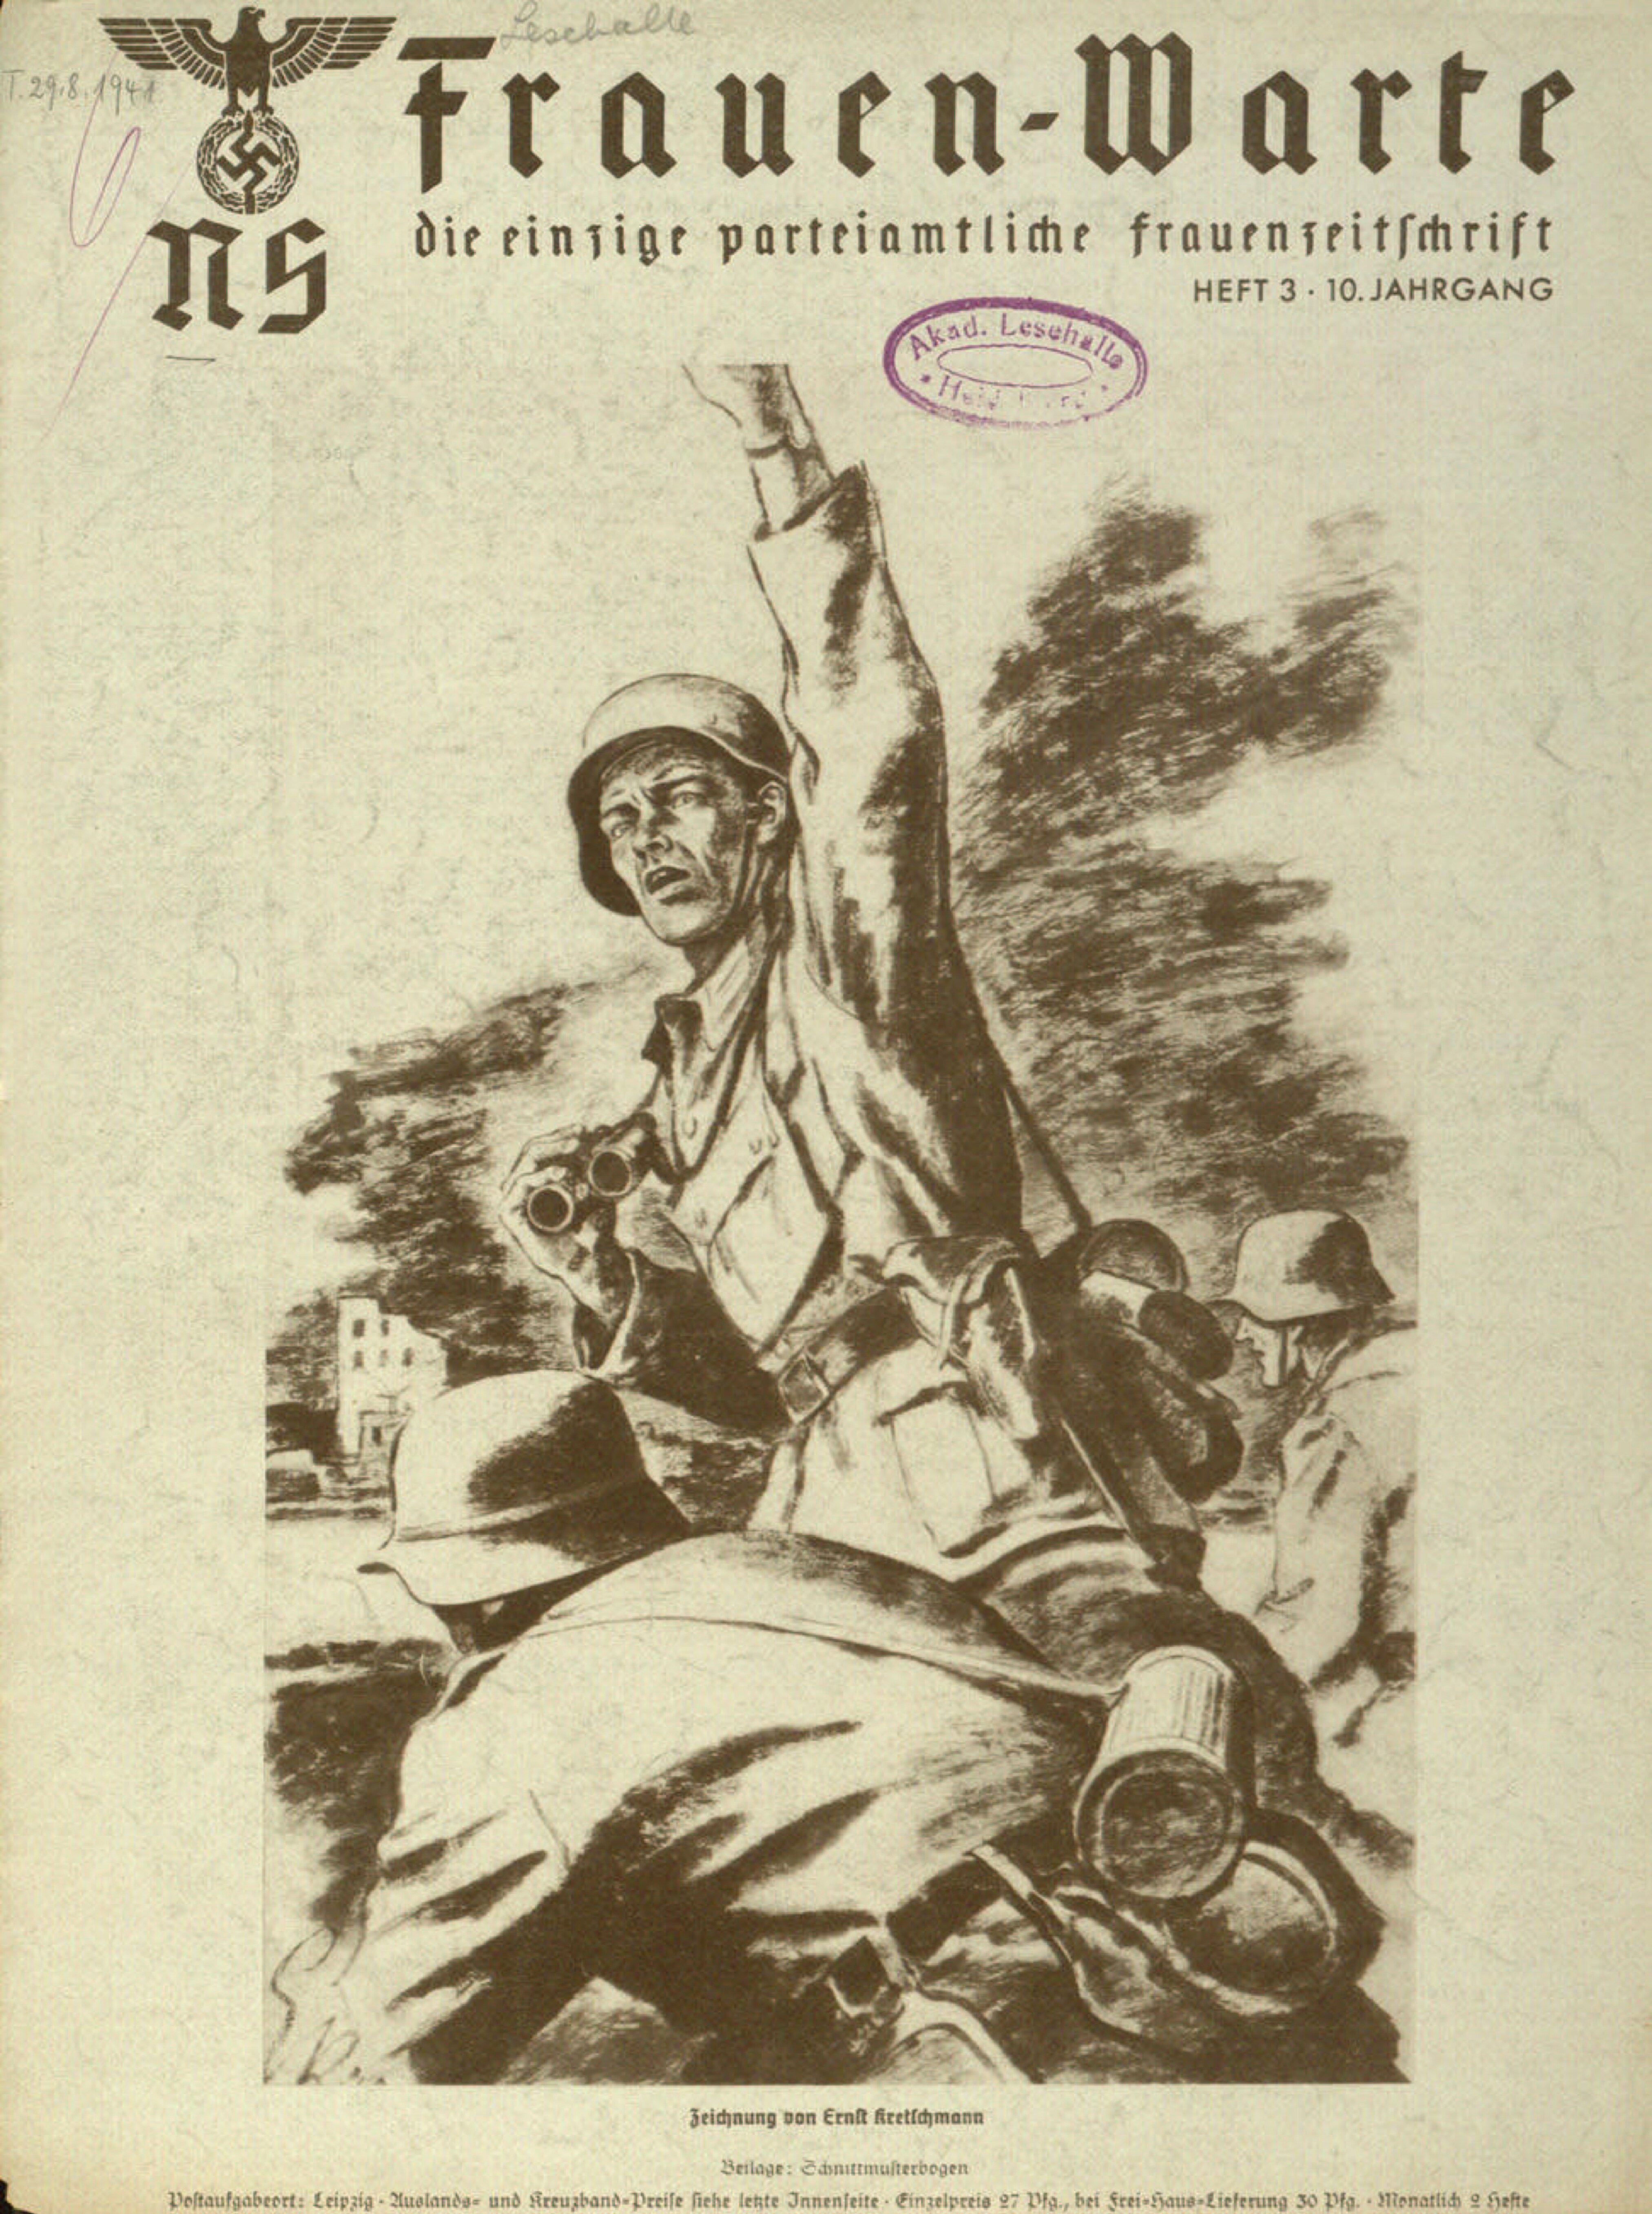 Frauen-Warte 10. Jahrgang Heft 03 (1941, 28 S., Scan, Fraktur)